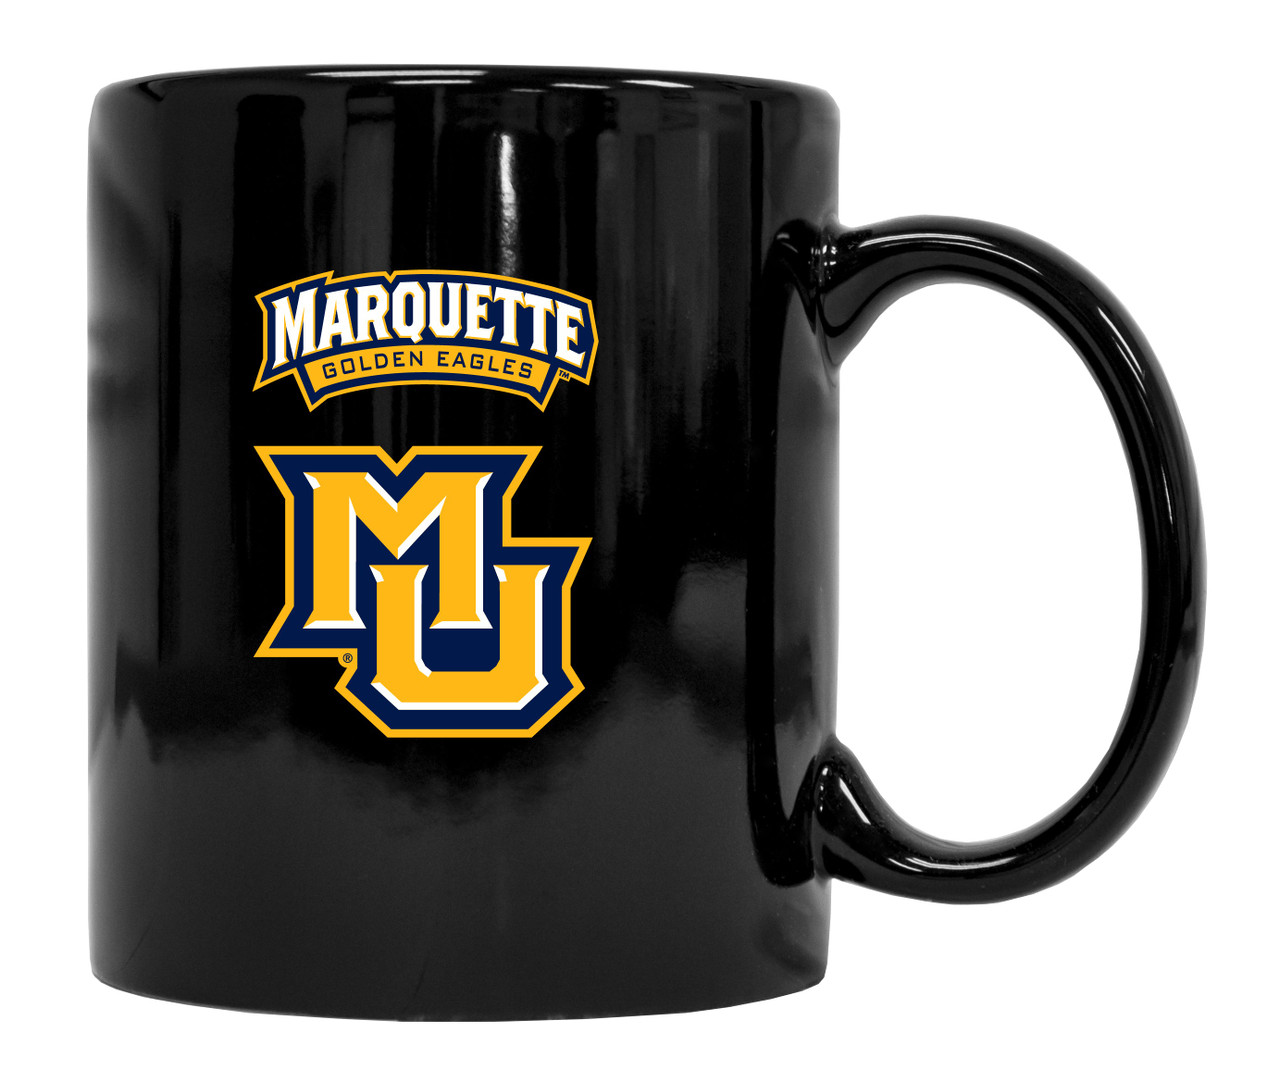 Marquette Golden Eagles Black Ceramic Mug 2-Pack (Black).